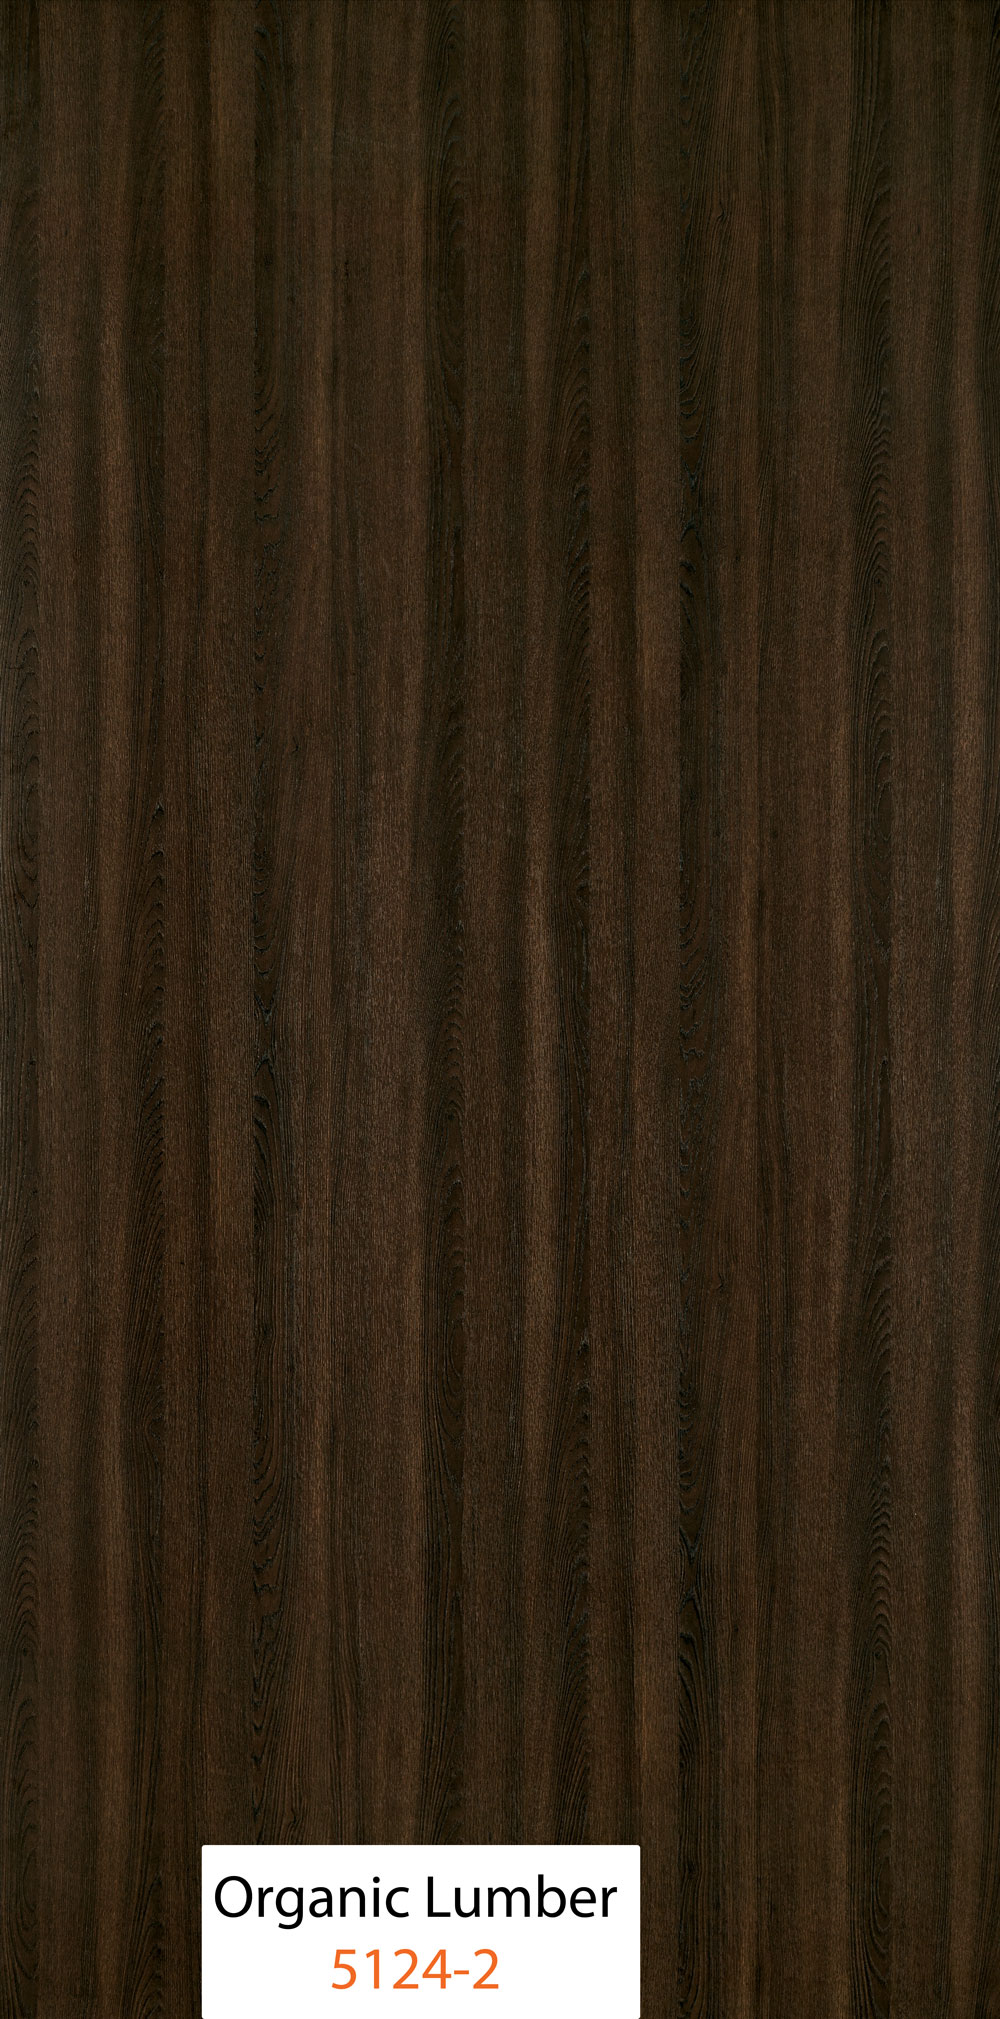 Organic Lumber (5124-2)